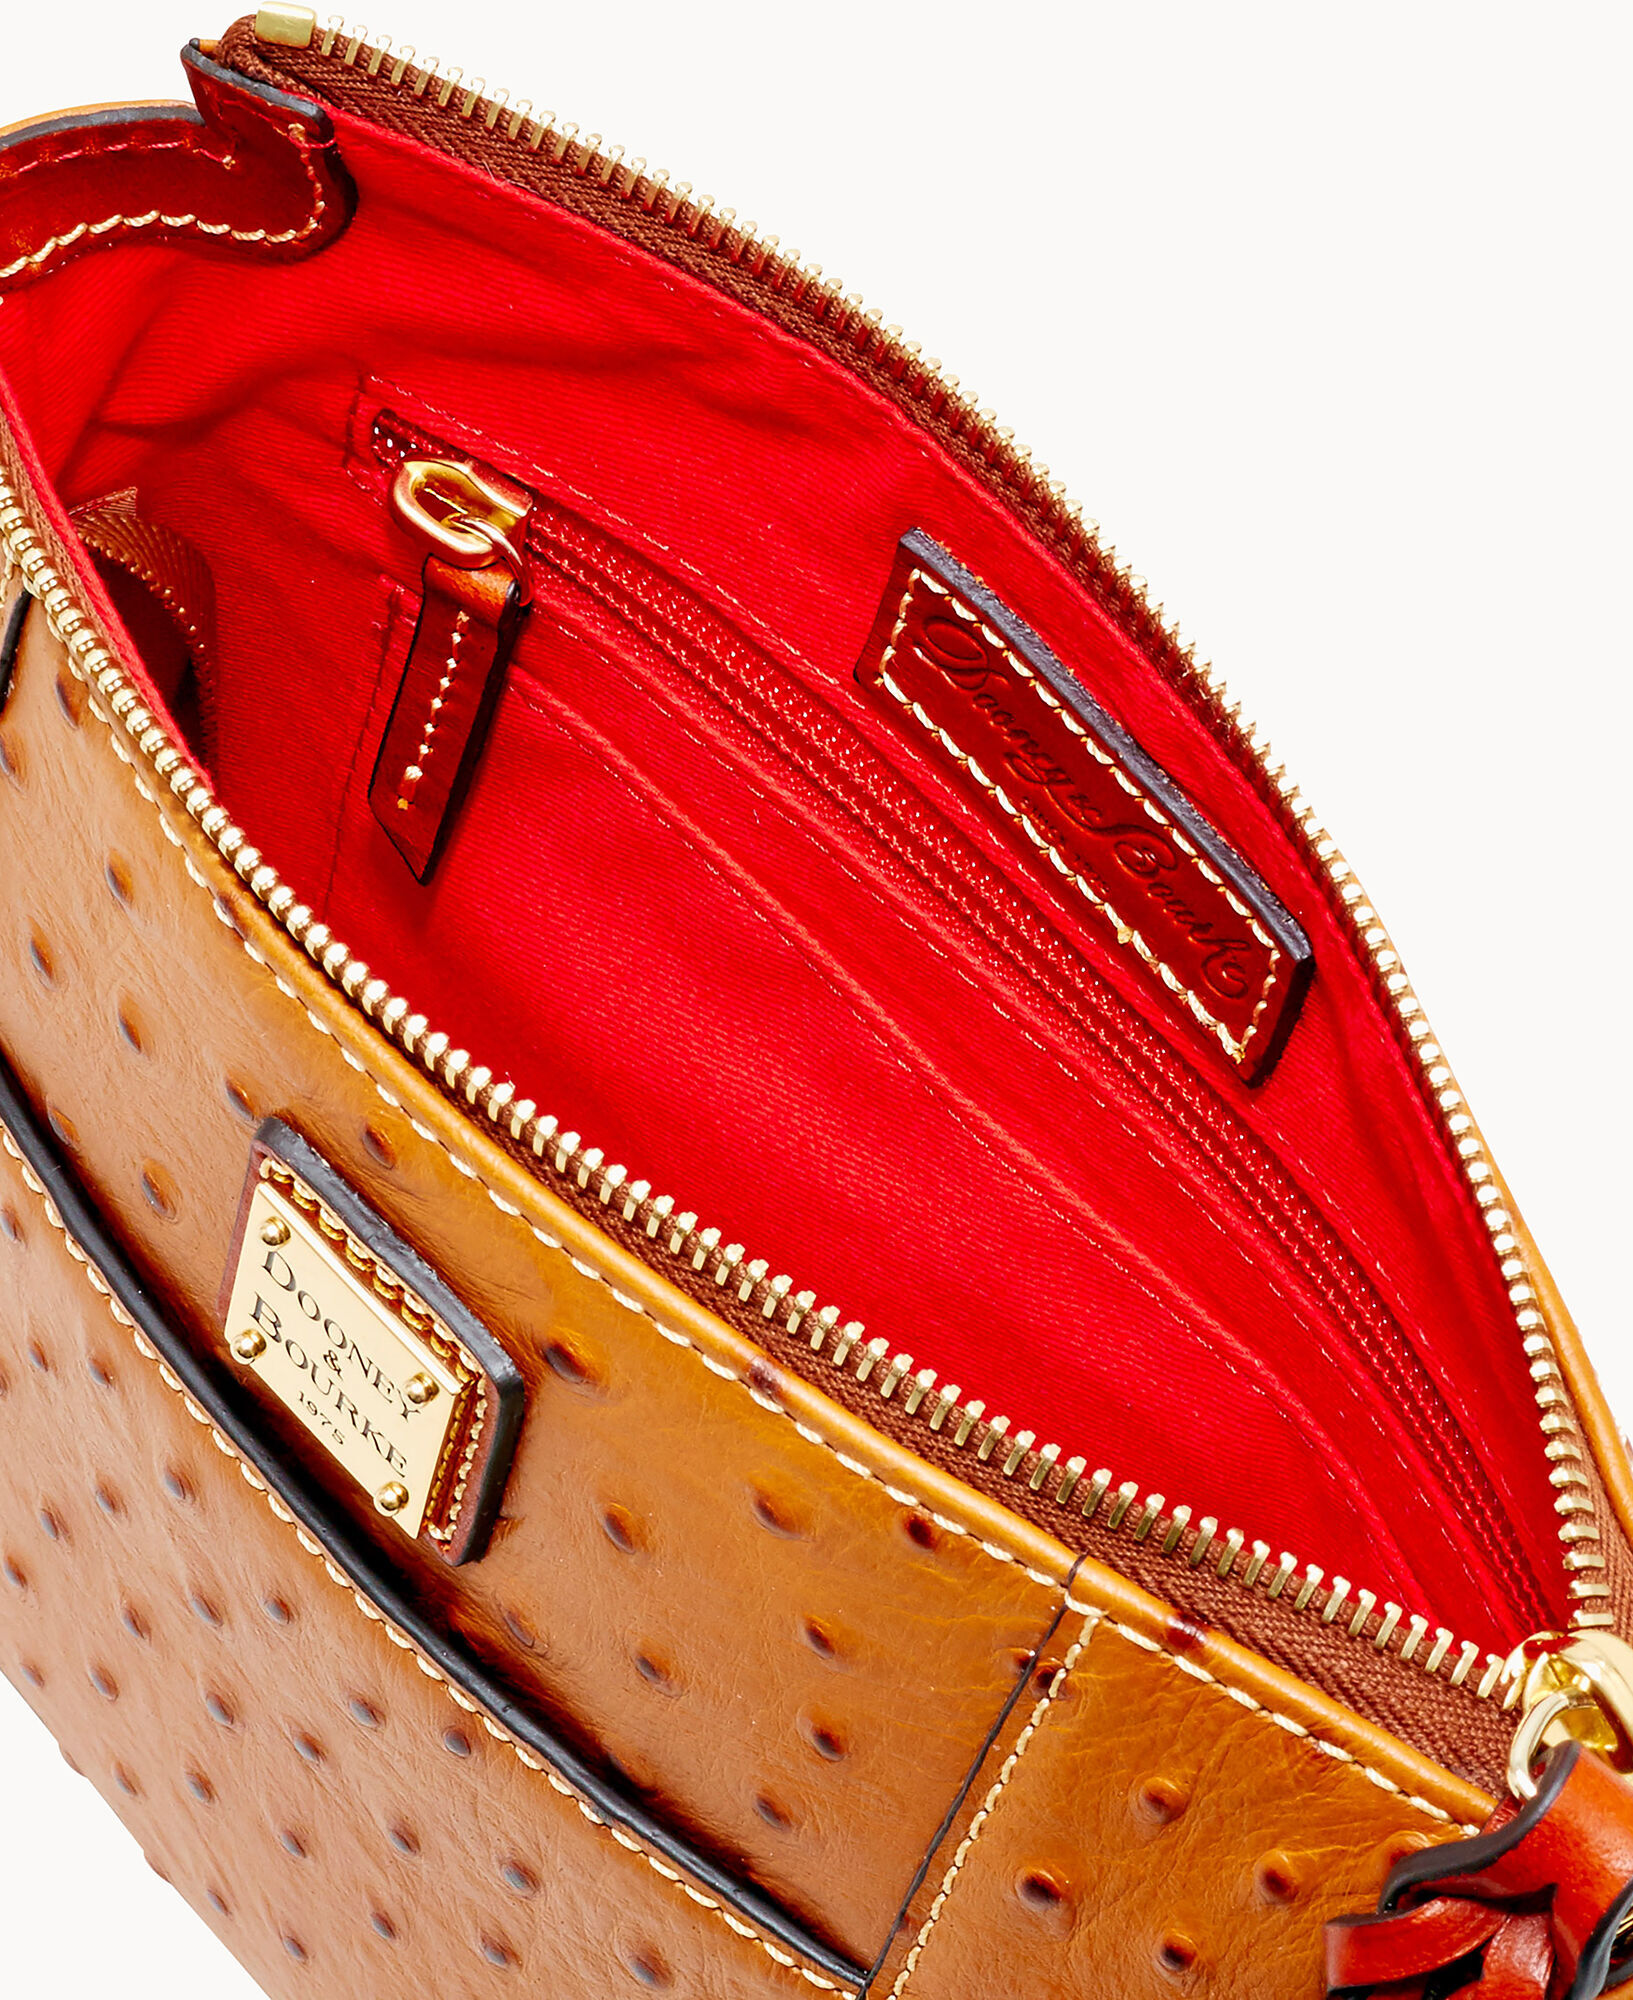 Dooney & Bourke Purse Ostrich Leather Handbag Orange Leather 